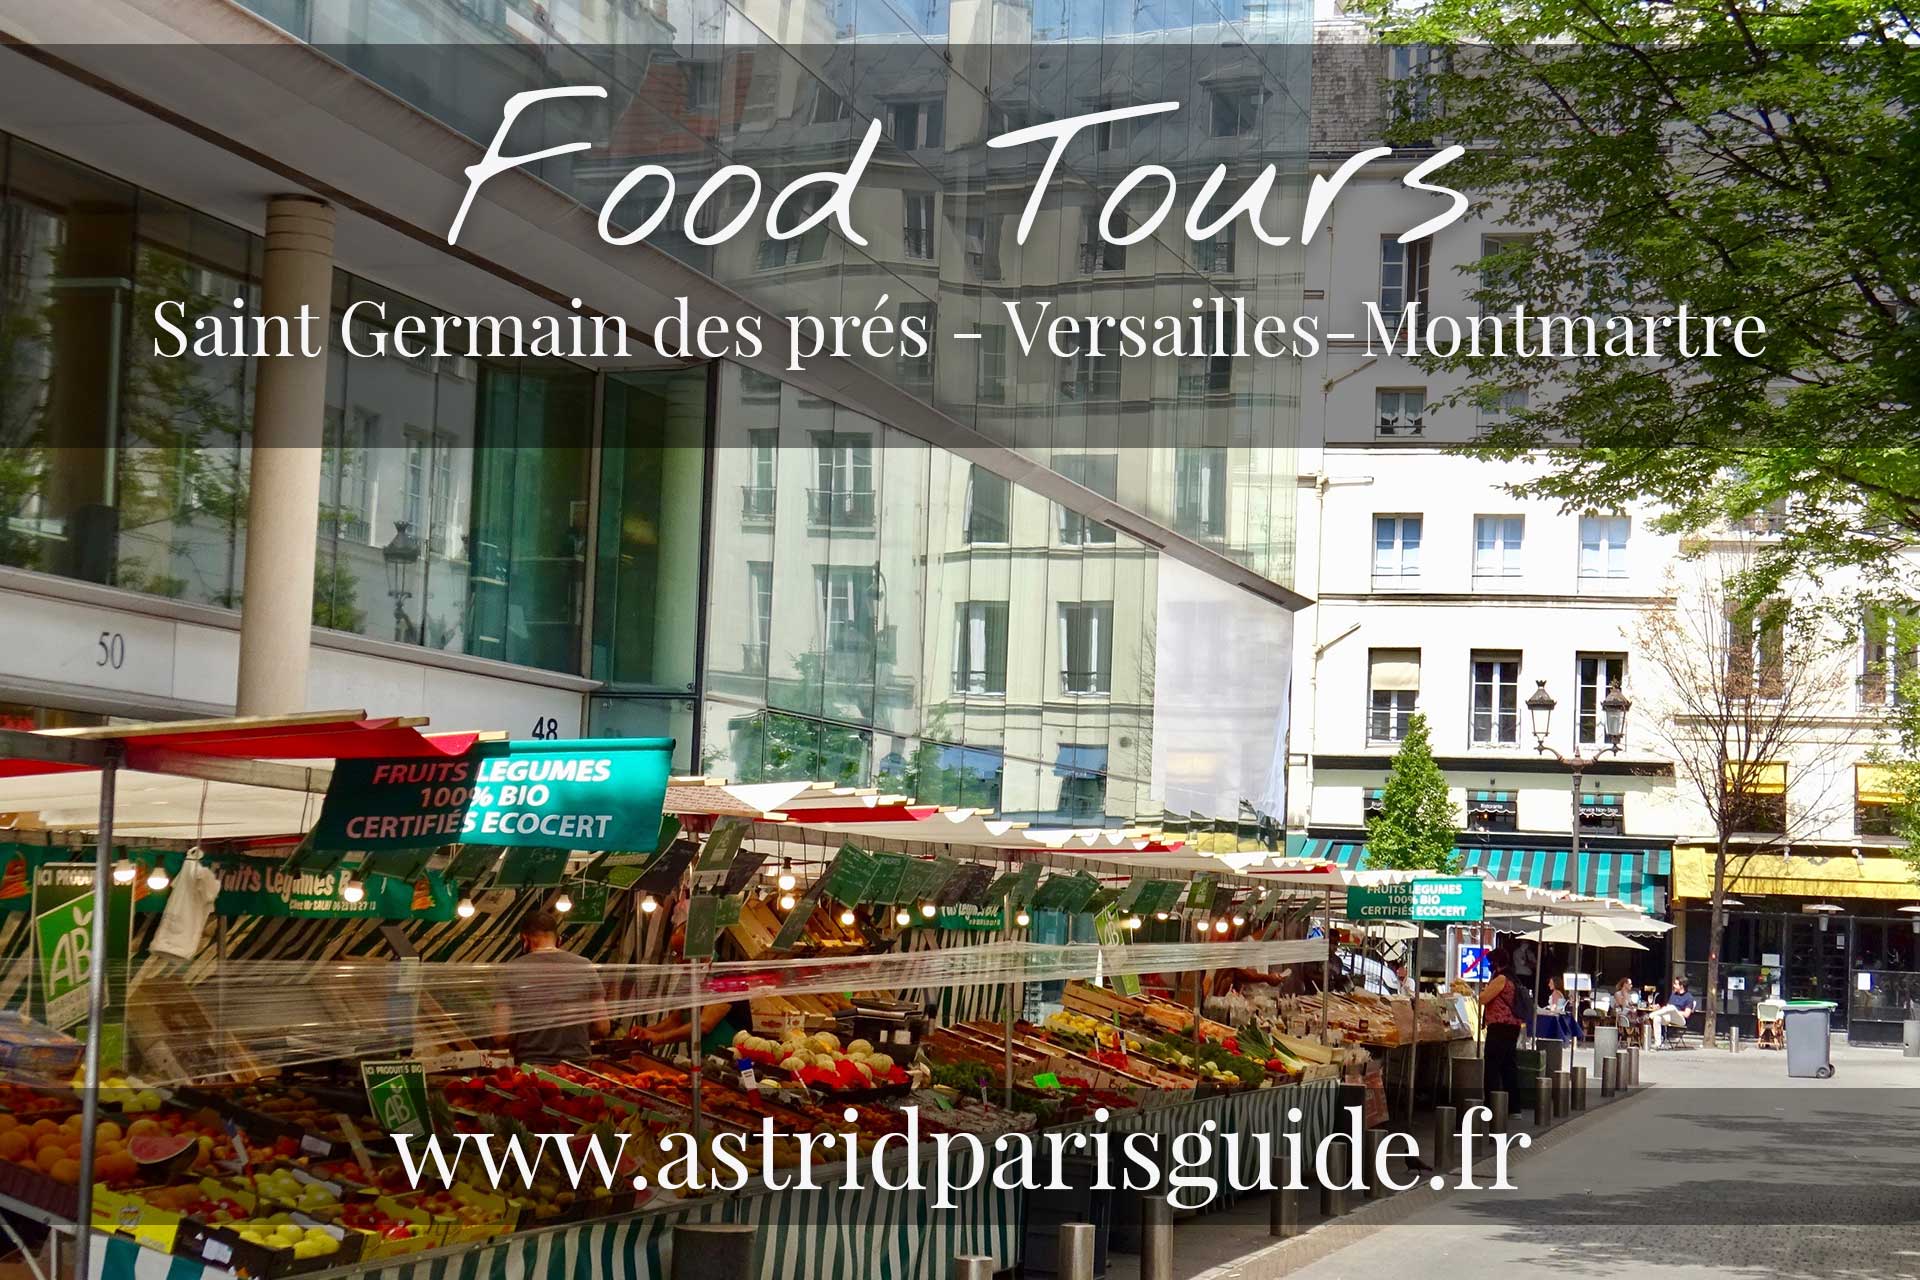 formule food tour visite paris guide